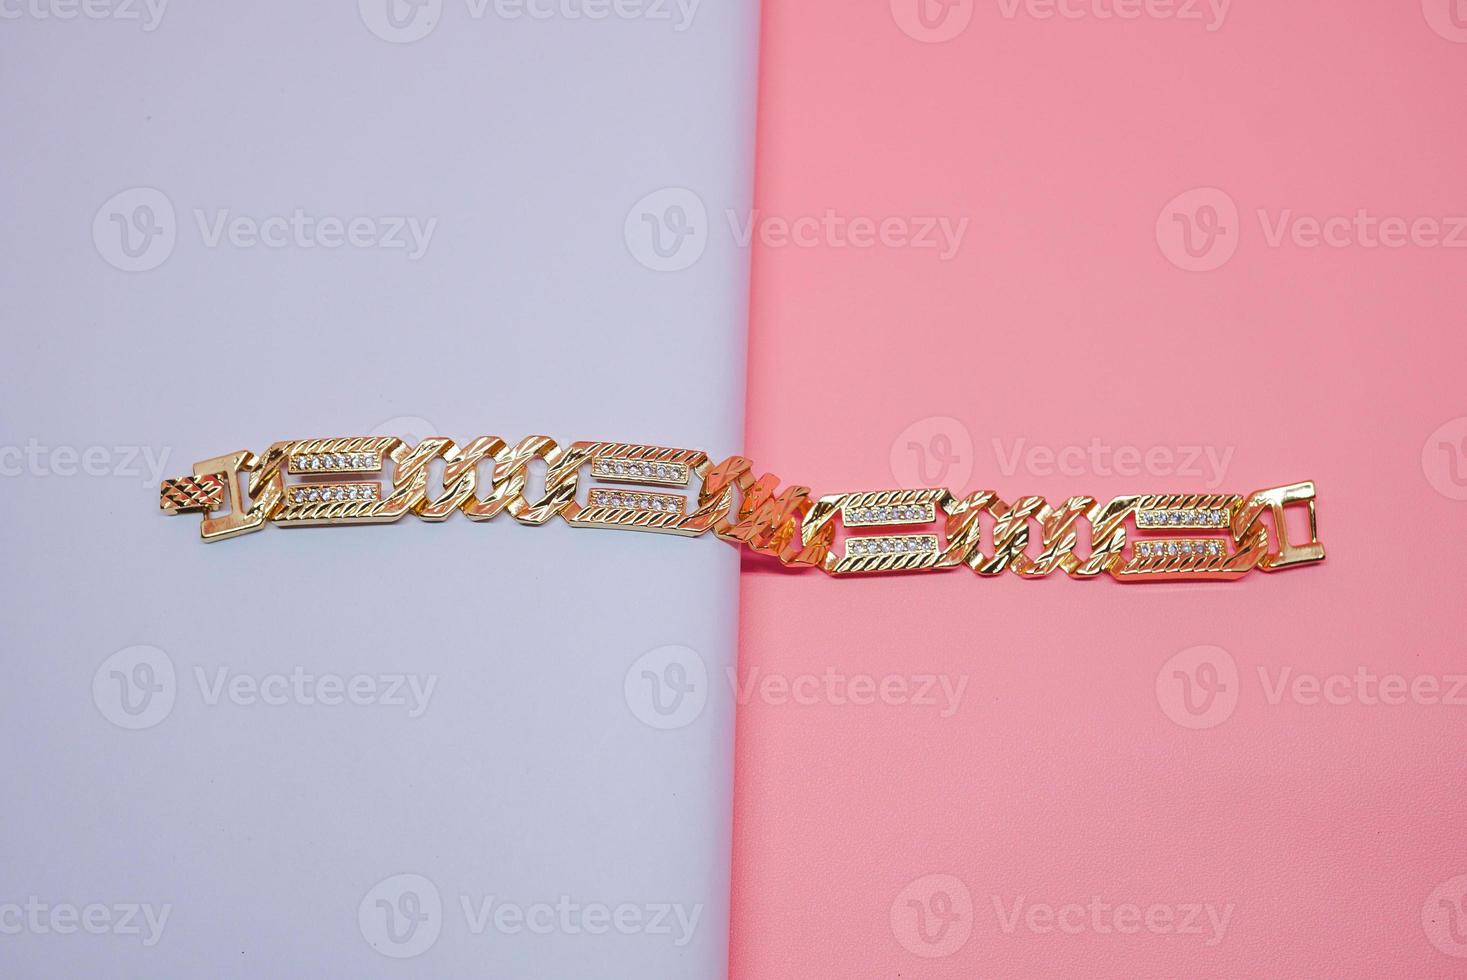 photo de bracelet en or pour femme allemande